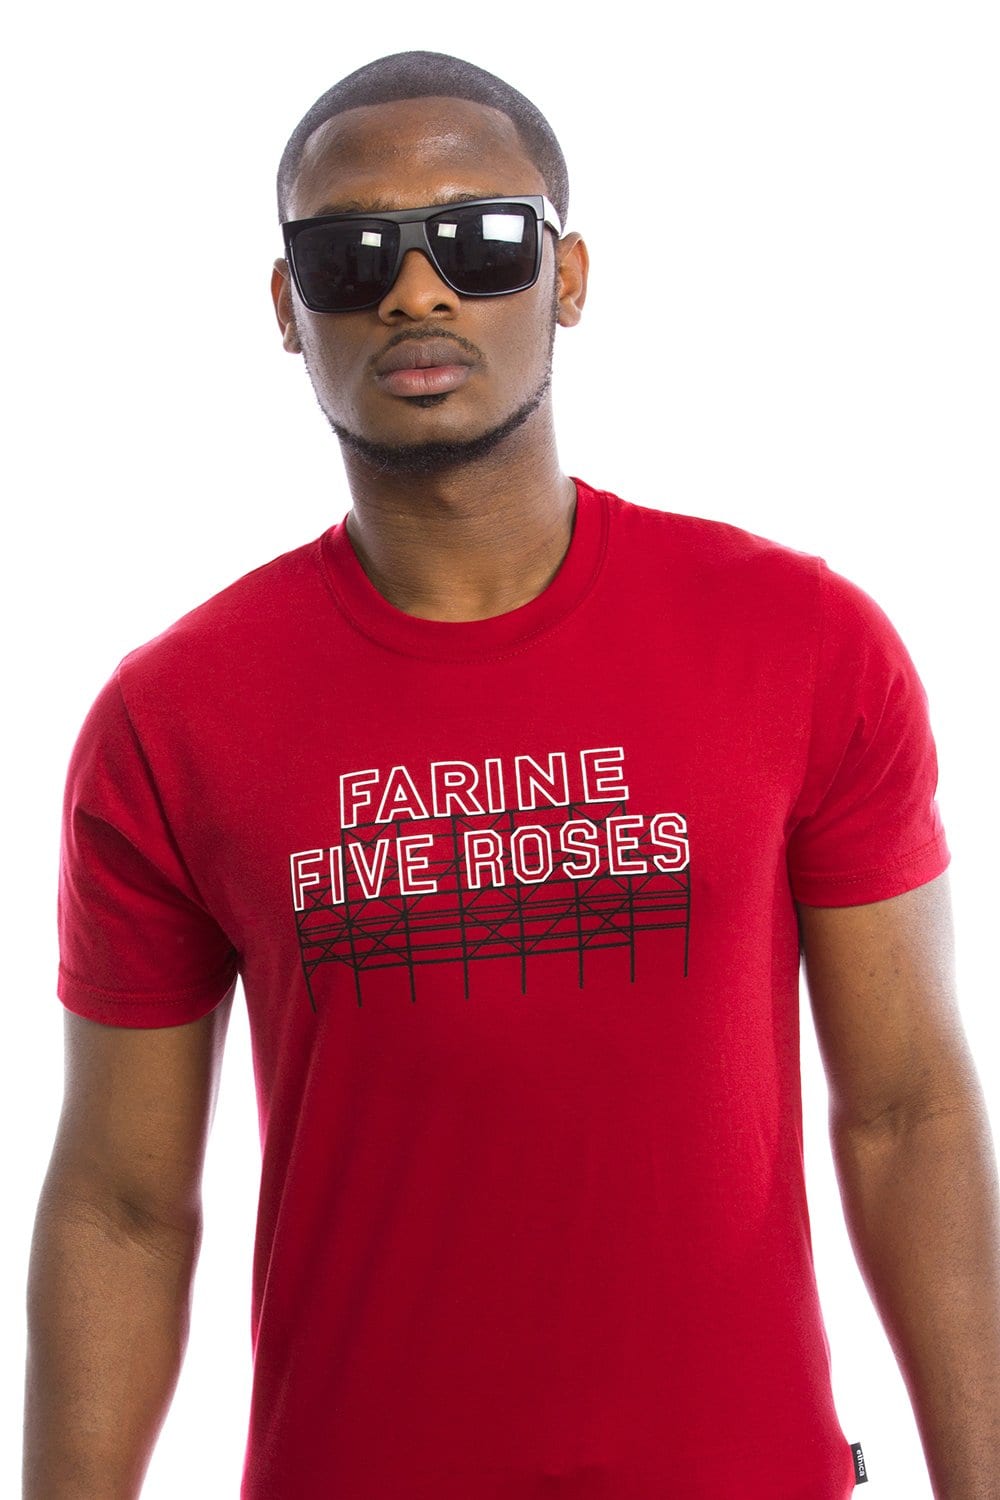 T-shirt pour homme - Farine Five Roses par Plb Design vendu par SignéLocal.com